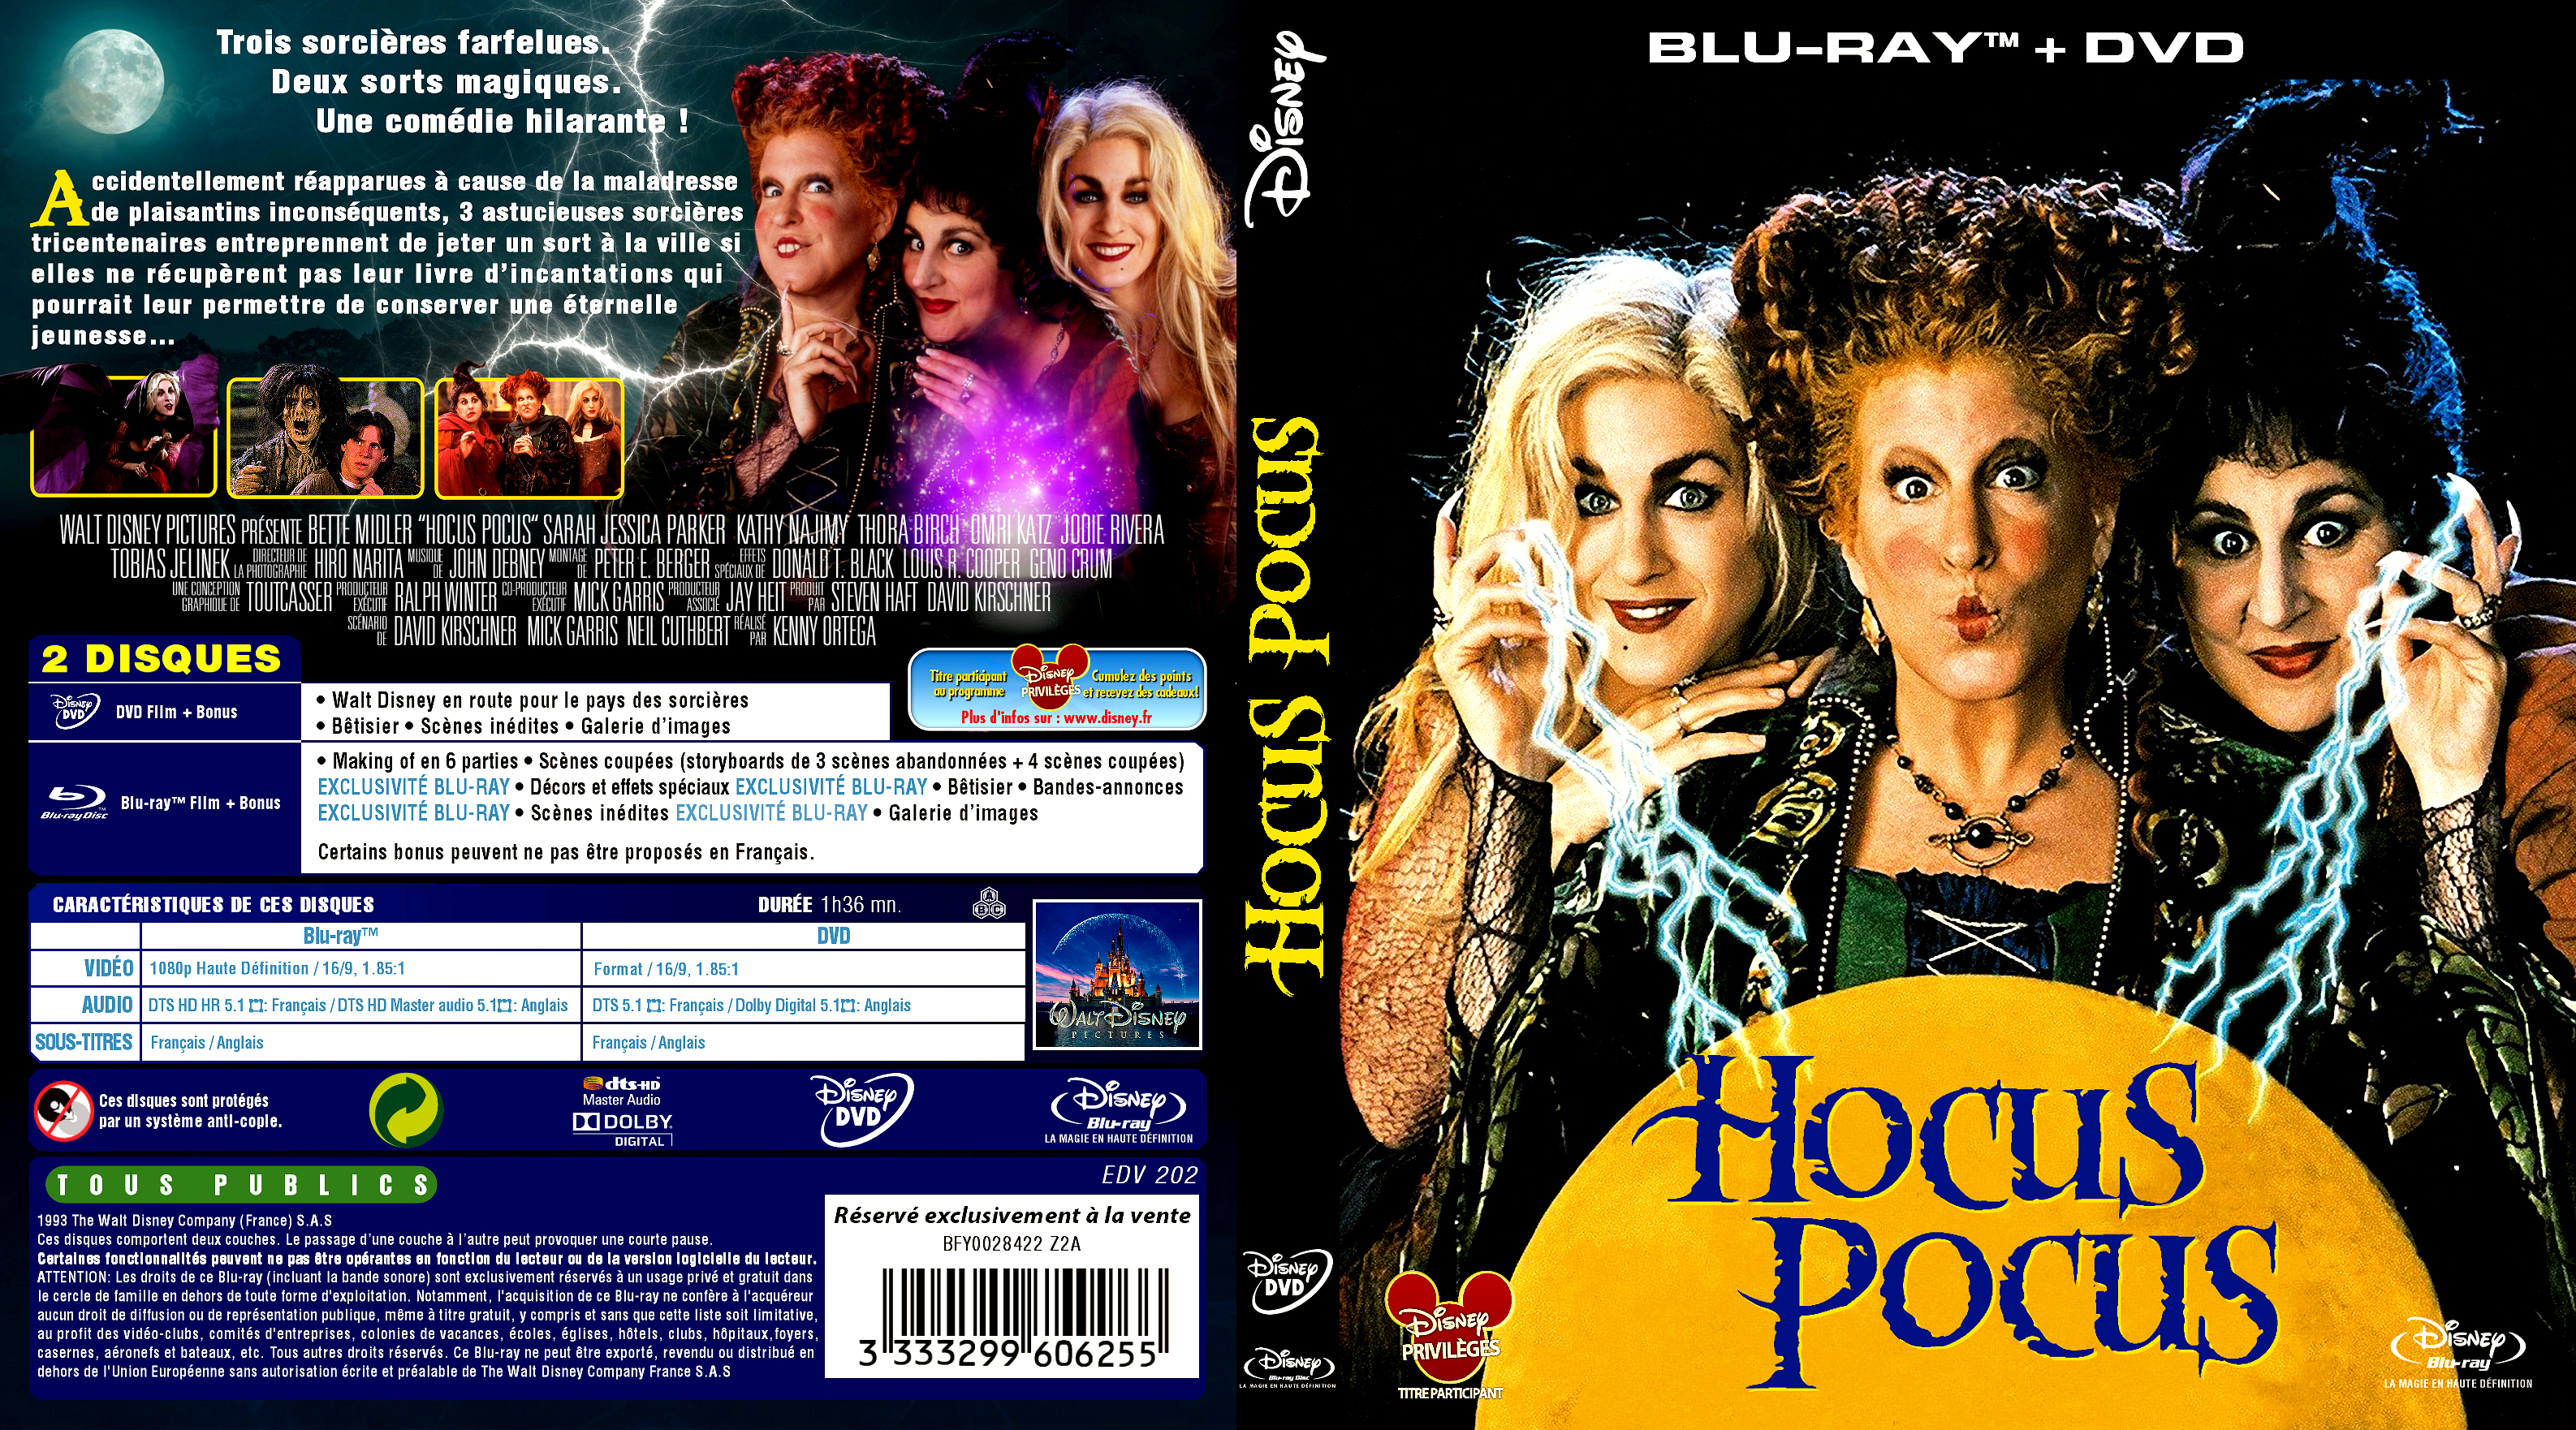 Hocus Pocus : Les trois sorcières.